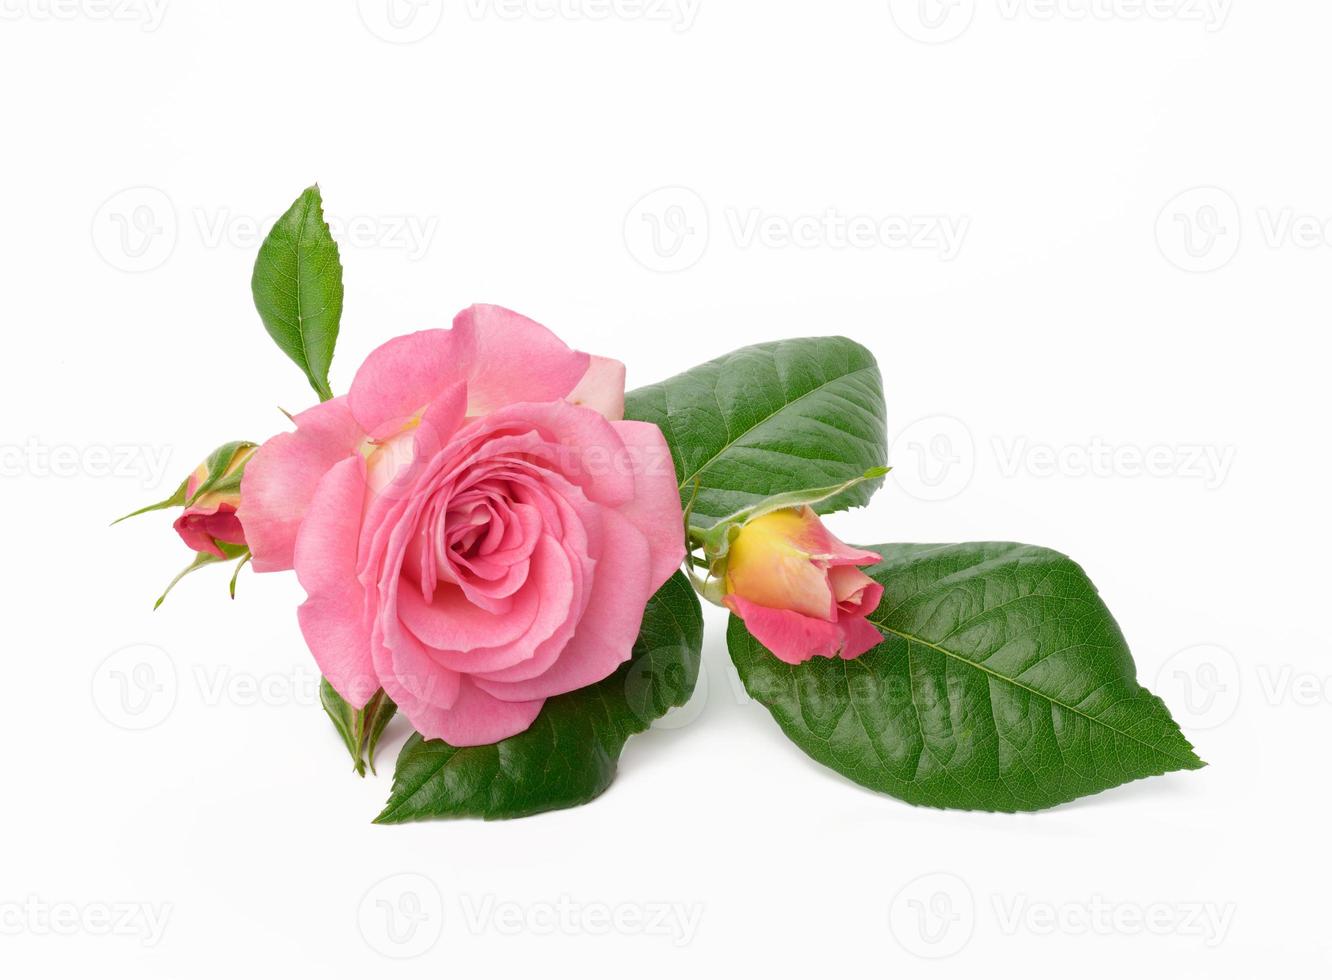 bouton de rose rose en fleurs avec des feuilles vertes sur fond blanc, belle fleur photo